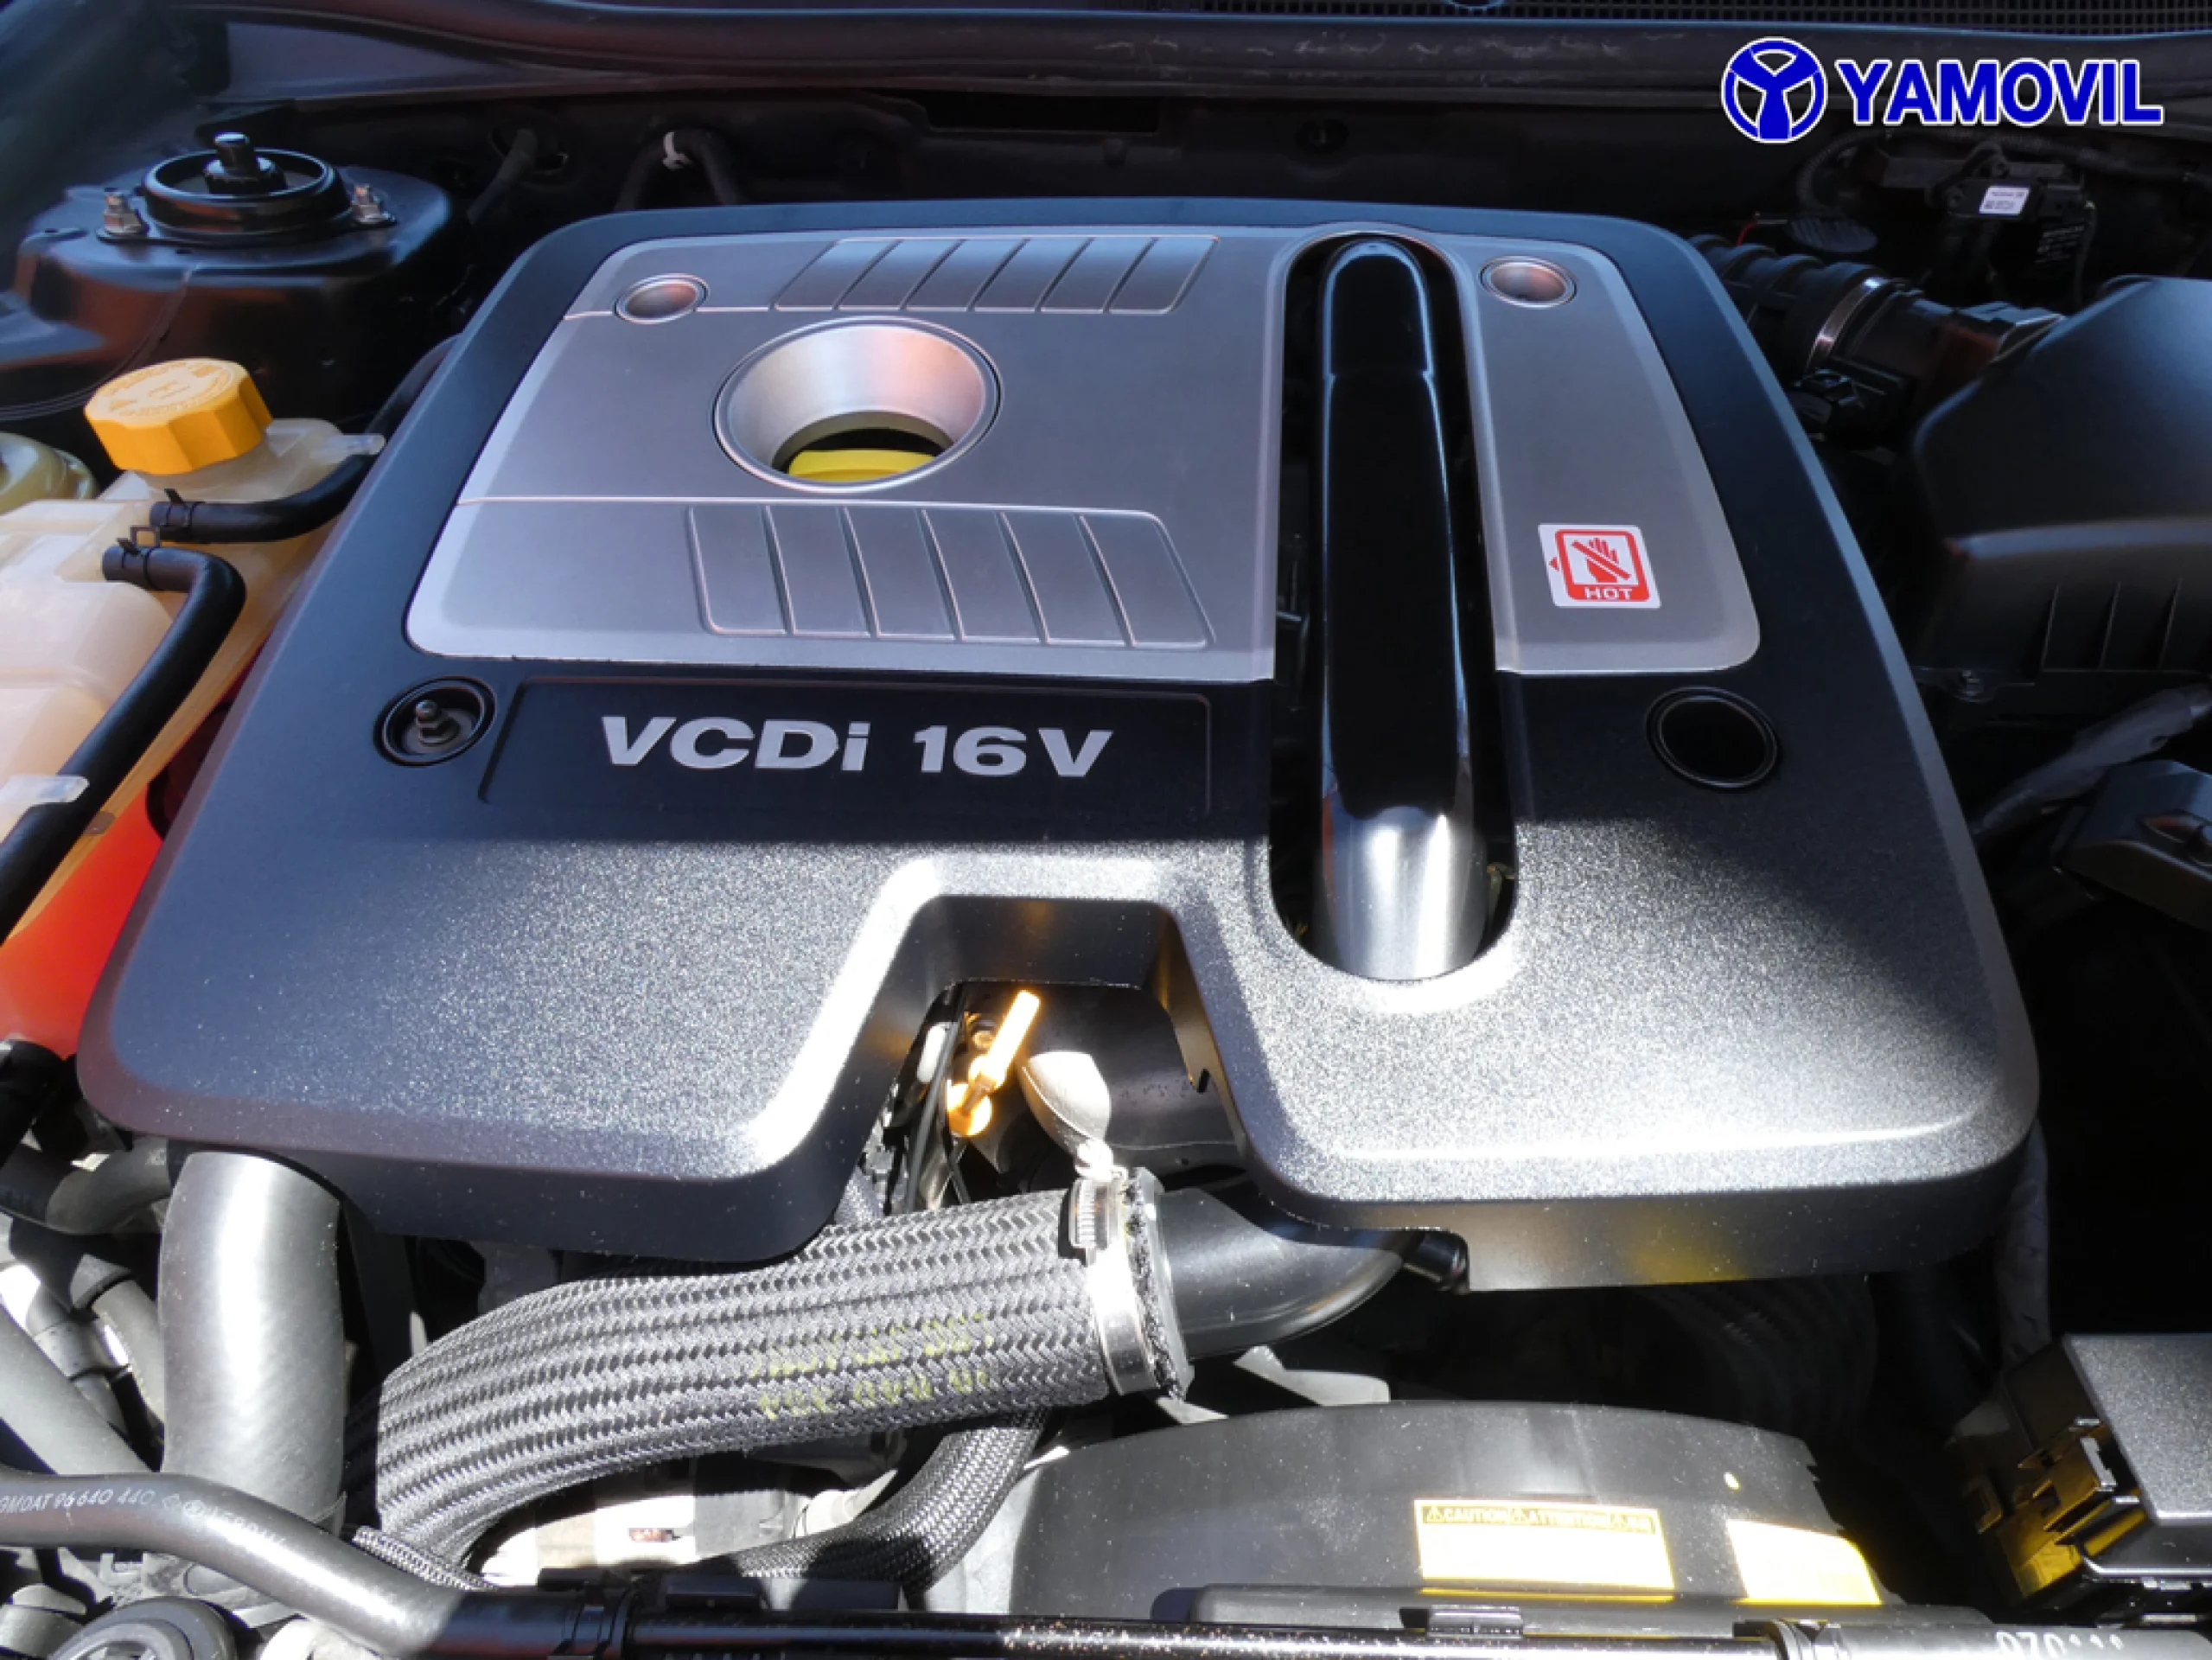 Chevrolet Epica 2.0 VCDi LT 4P - Foto 8